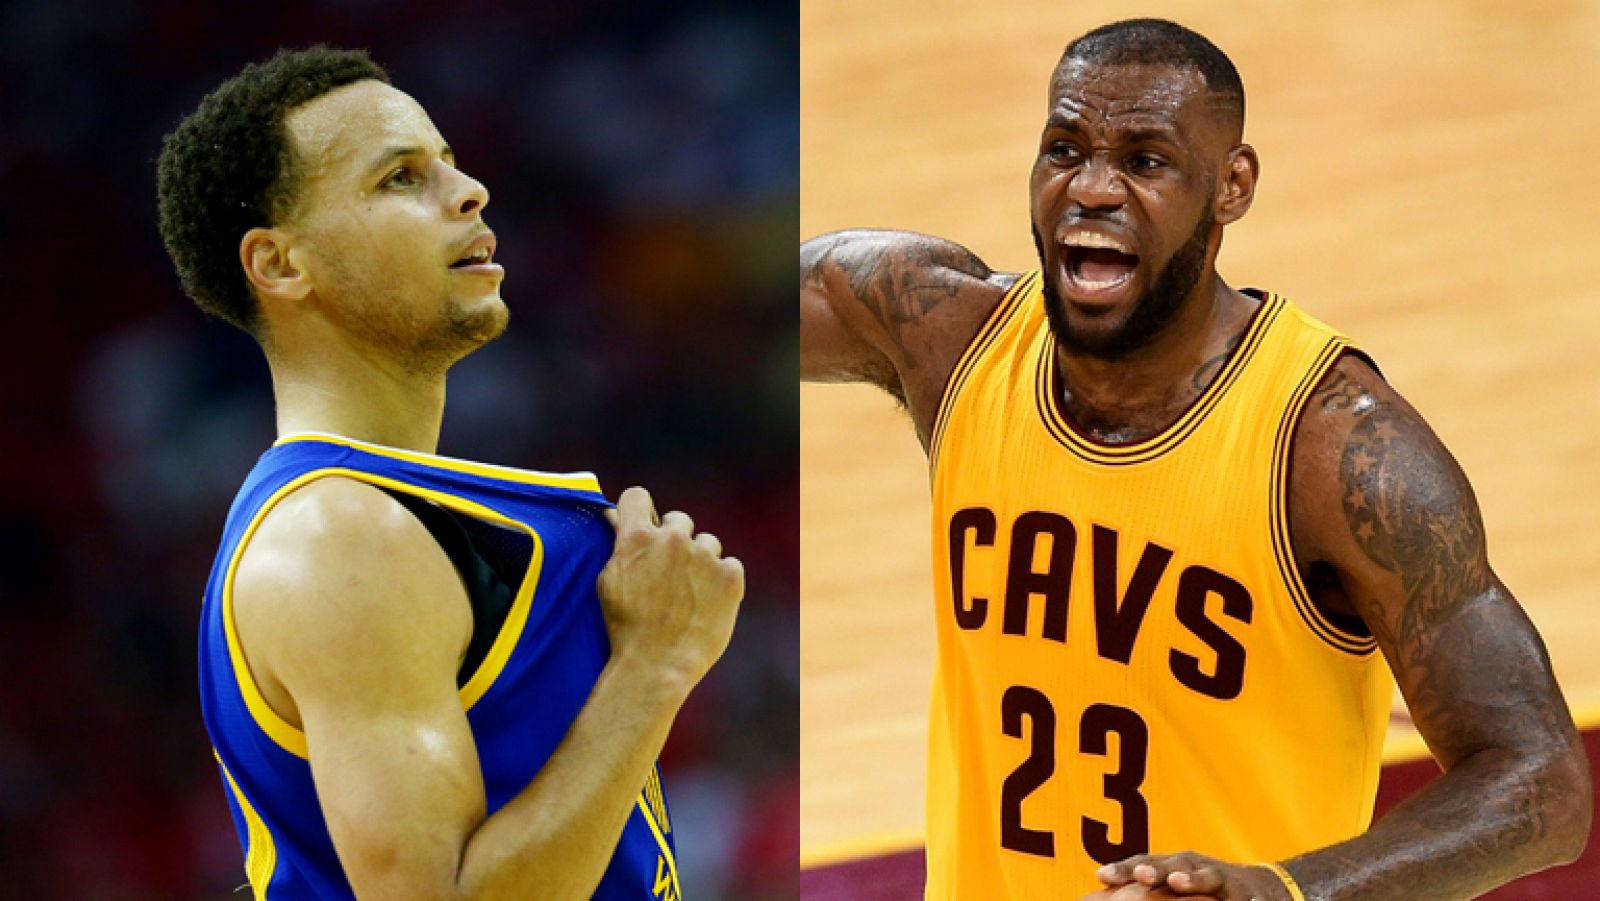 Los jugadores Stephen Curry (izquierda) y LeBron James (derecha) se verán las caras en la final de la NBA.